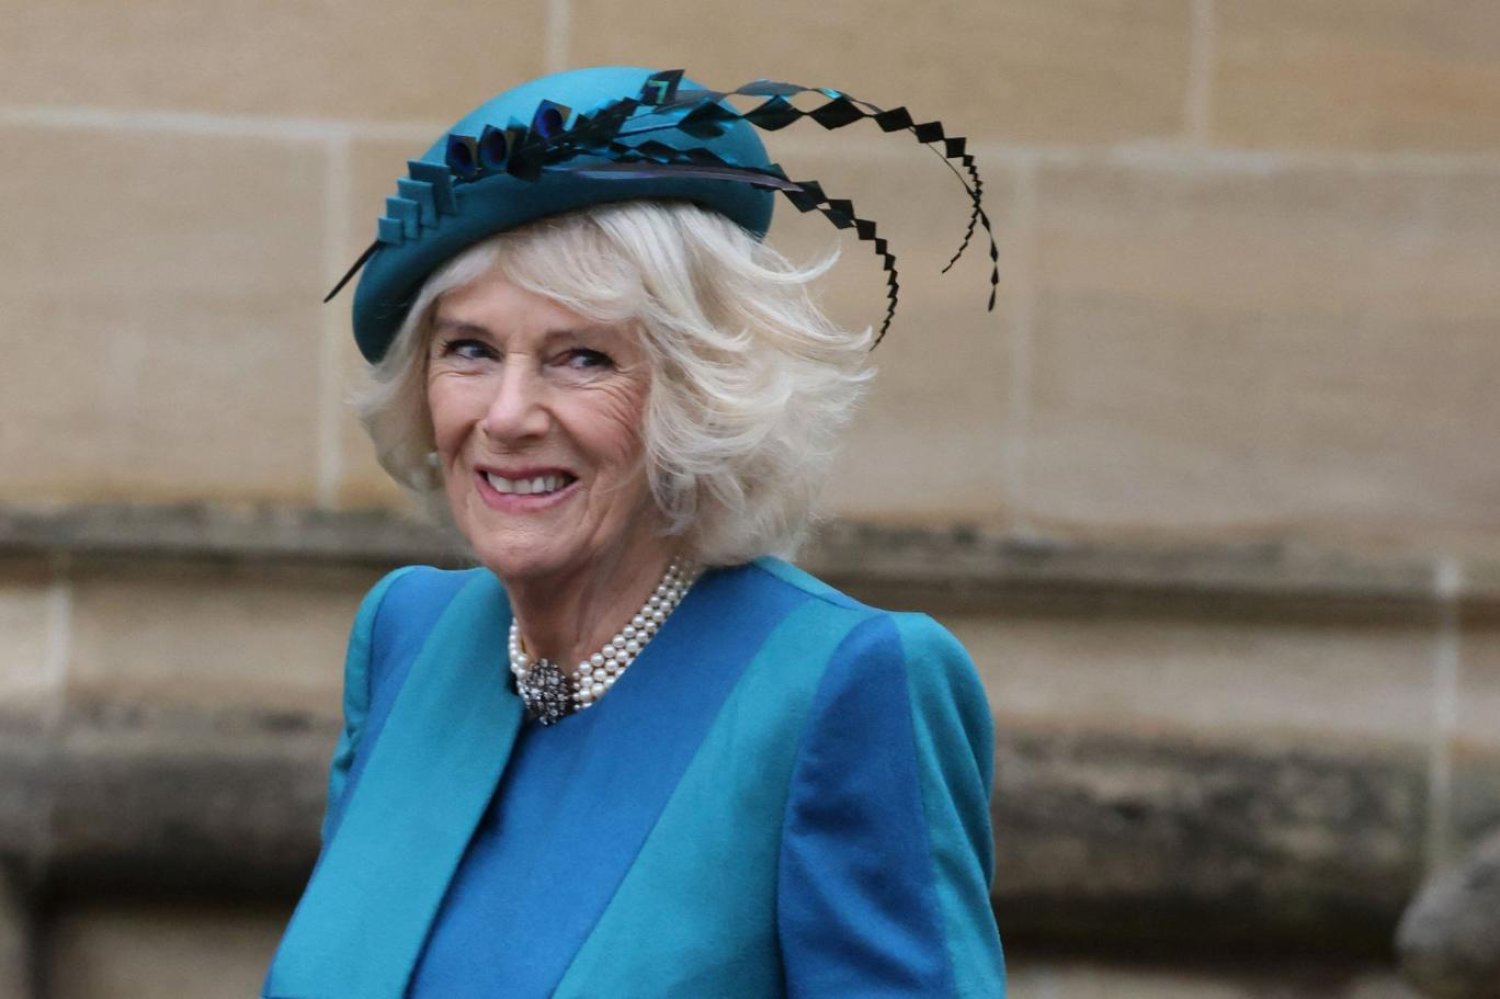 Kral Charles'a konan kanser teşhisinin ardından resmi ziyaretleri artıran Kraliçe Camilla, kraliyet görevlerine ara veriyor (AFP)